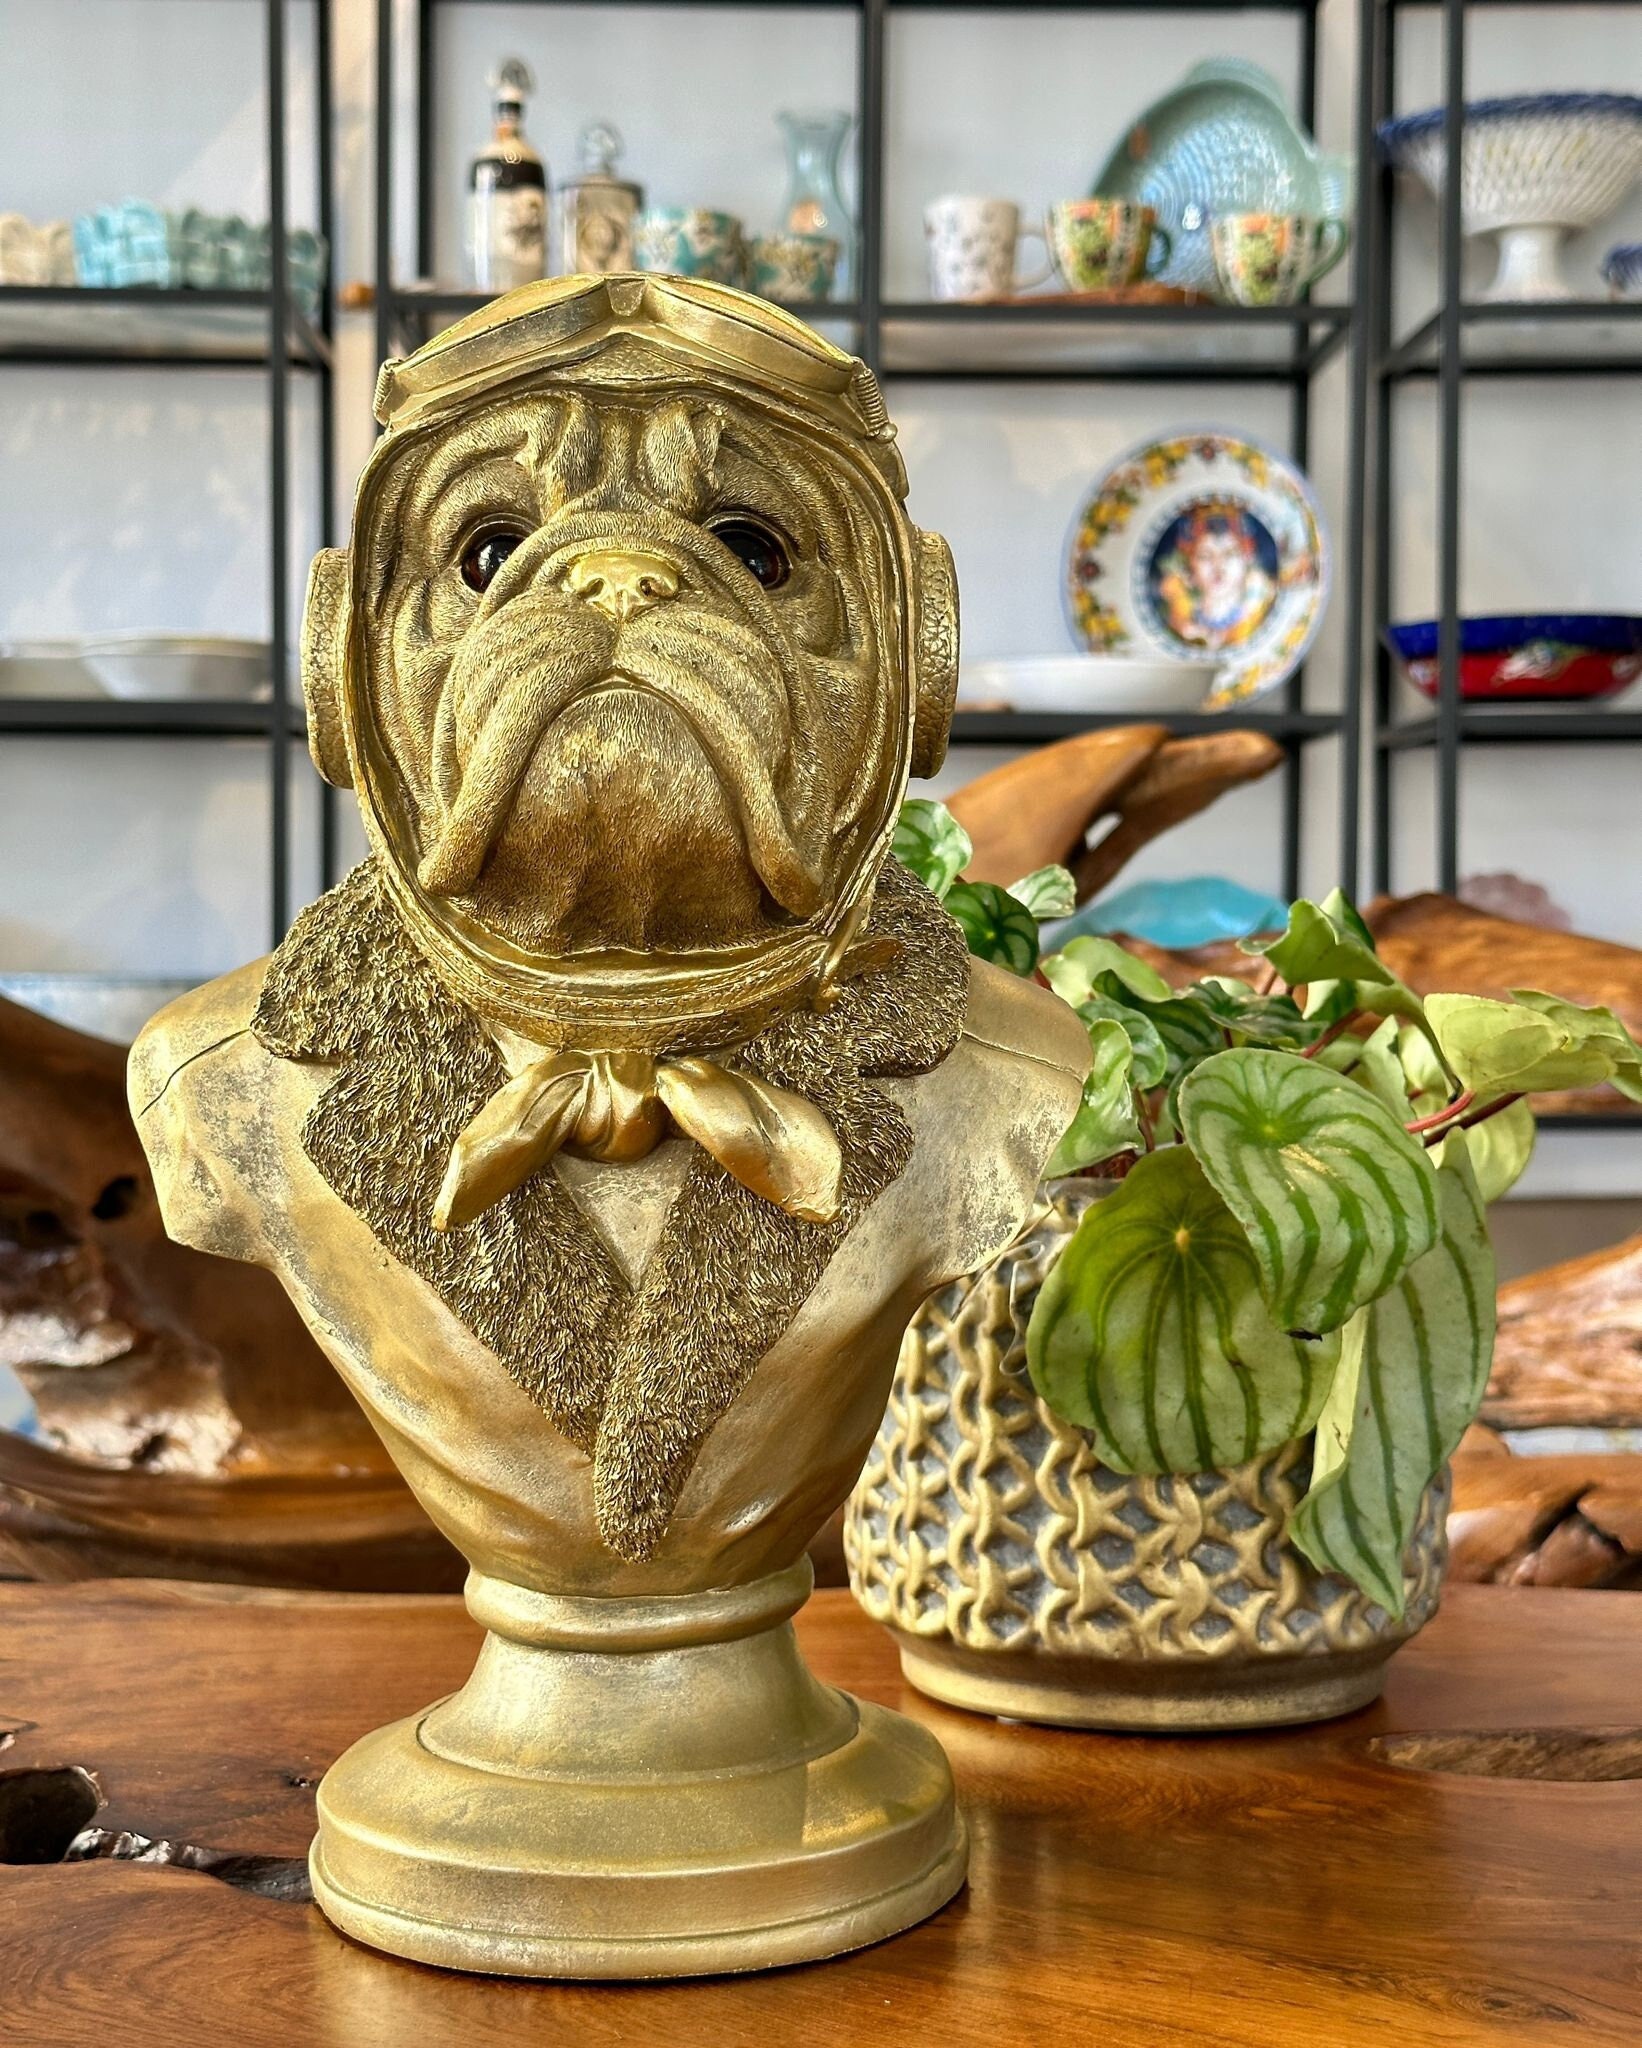 Kreative Französisch bulldog figur startseite dekoration auto innen  Ornament harz Tier skulptur handwerk desktop decor geburtstag geschenk